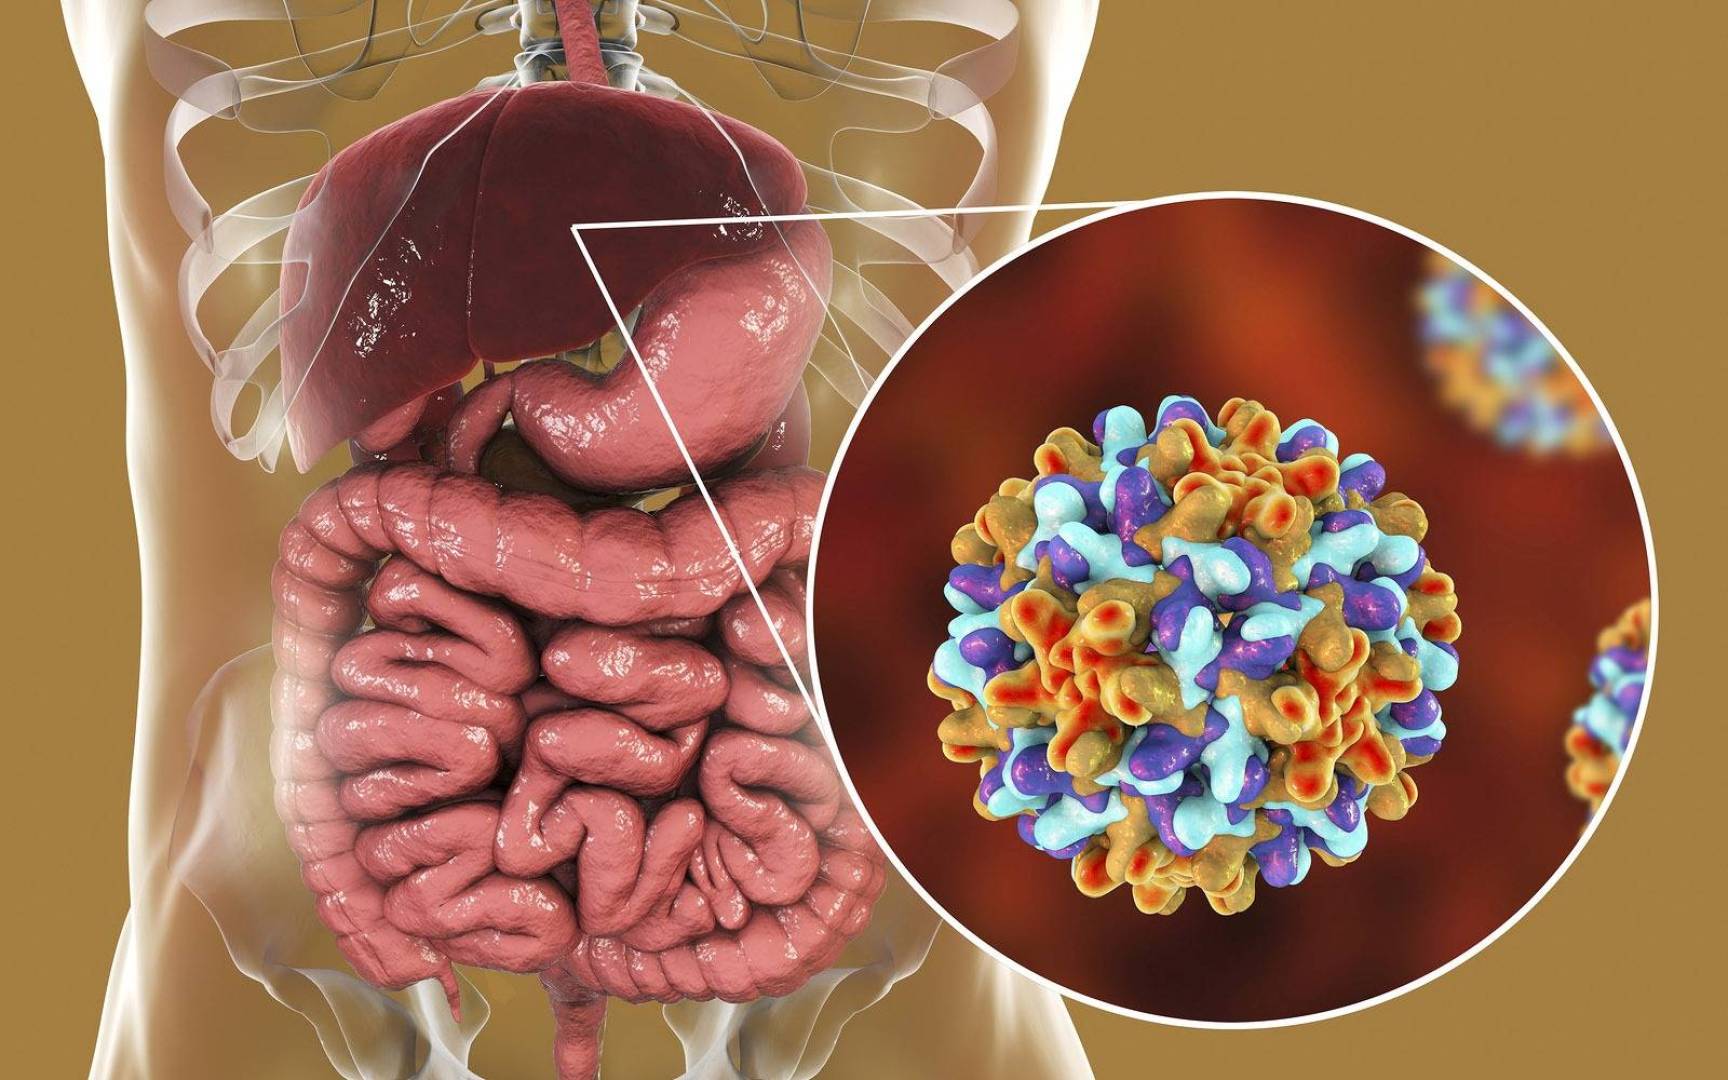 أسباب التهاب الكبد الفيروسي B وأعراضه وطرق تشخيصه وعلاجه